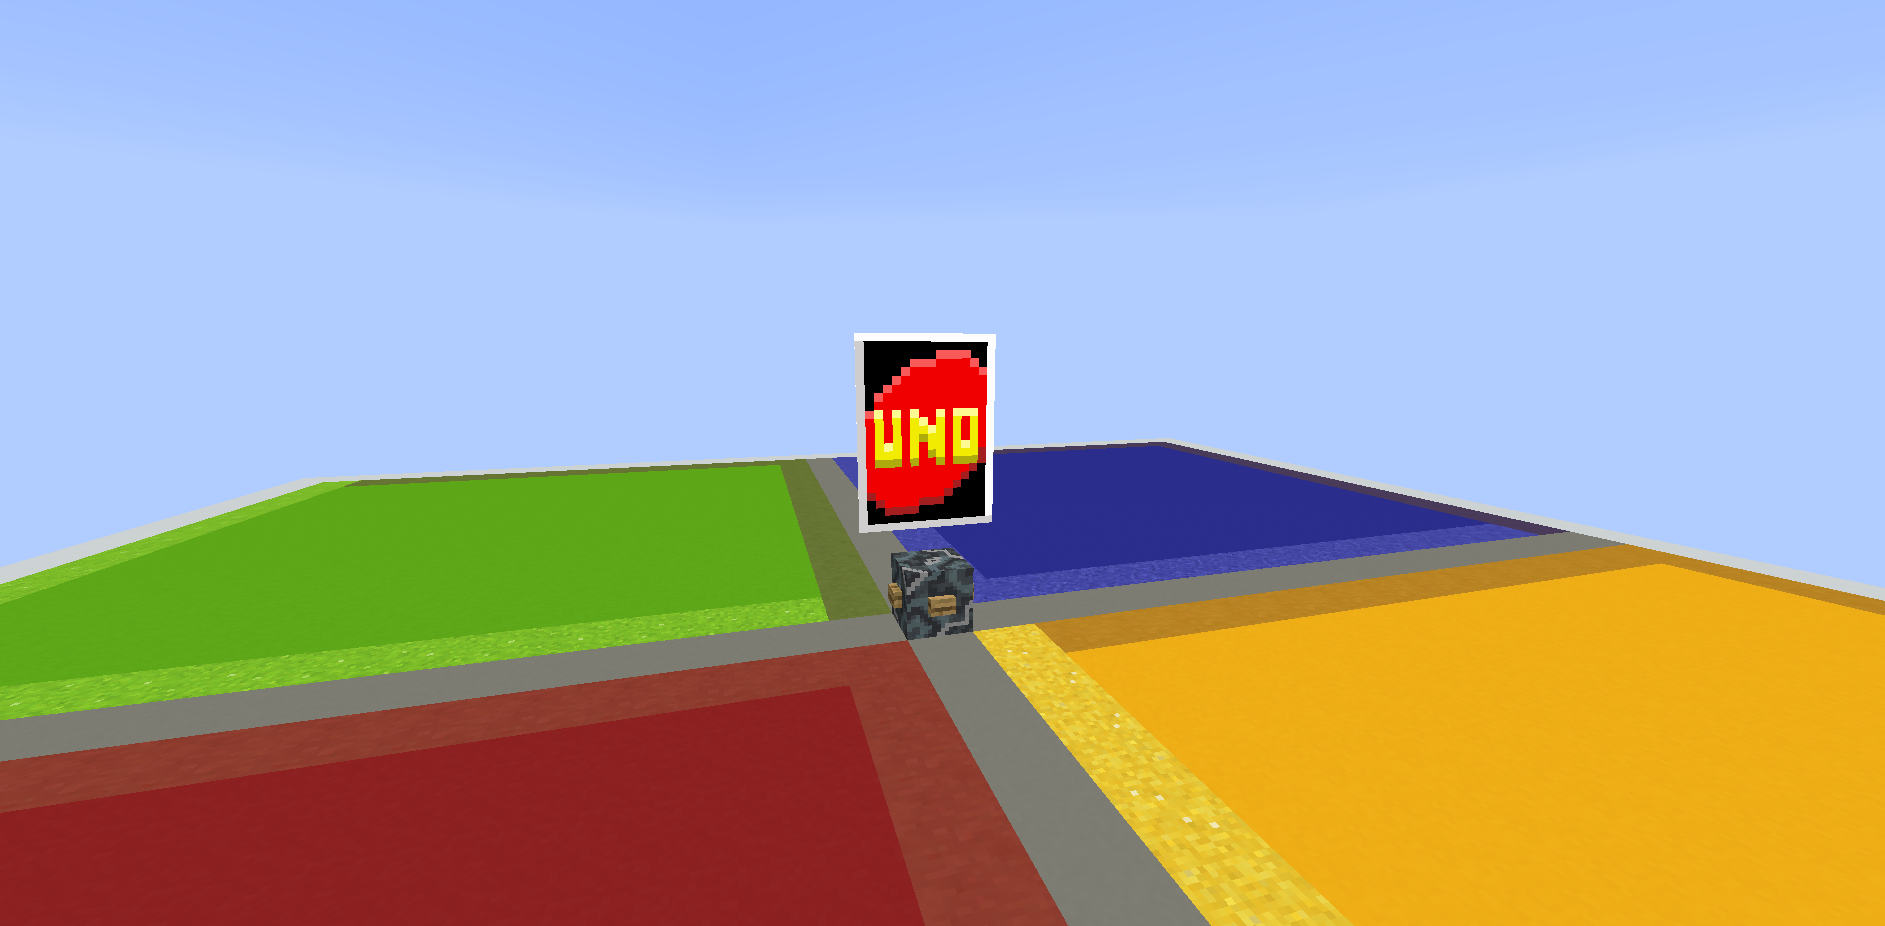 下载 Minecraft Uno 163 Kb 地图为我的世界